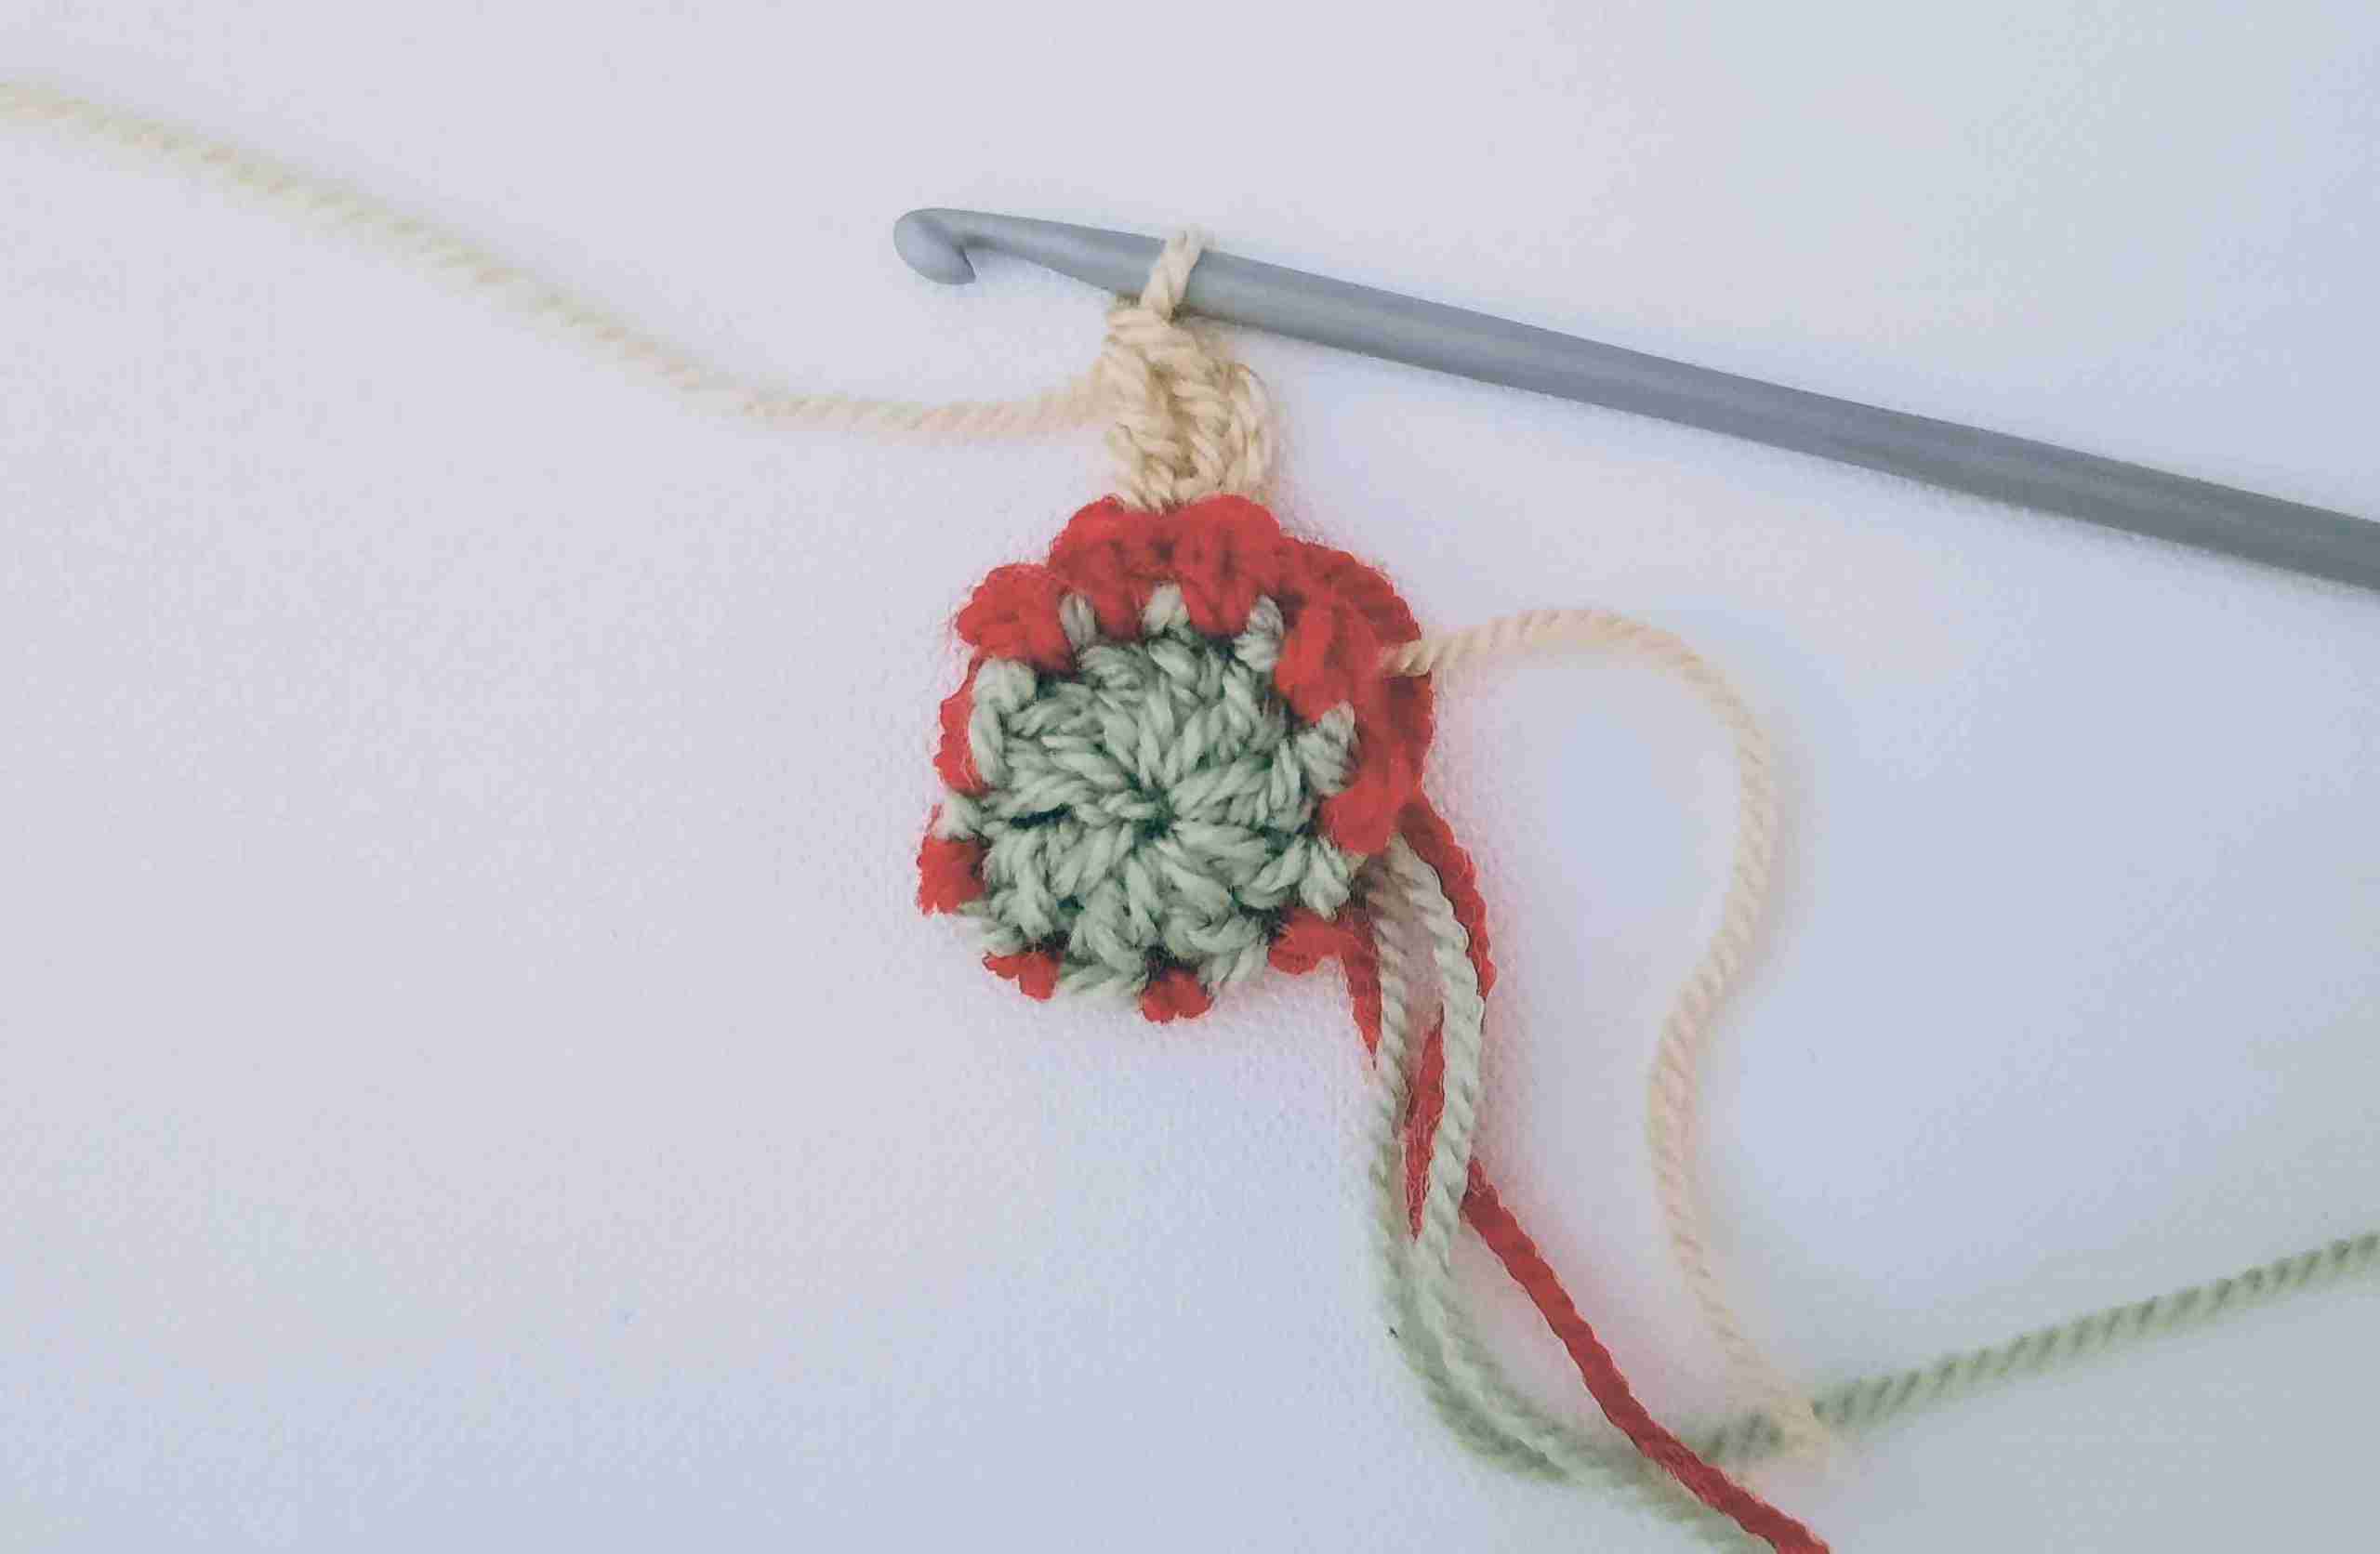 Crochet Christmas bell pattern for beginners